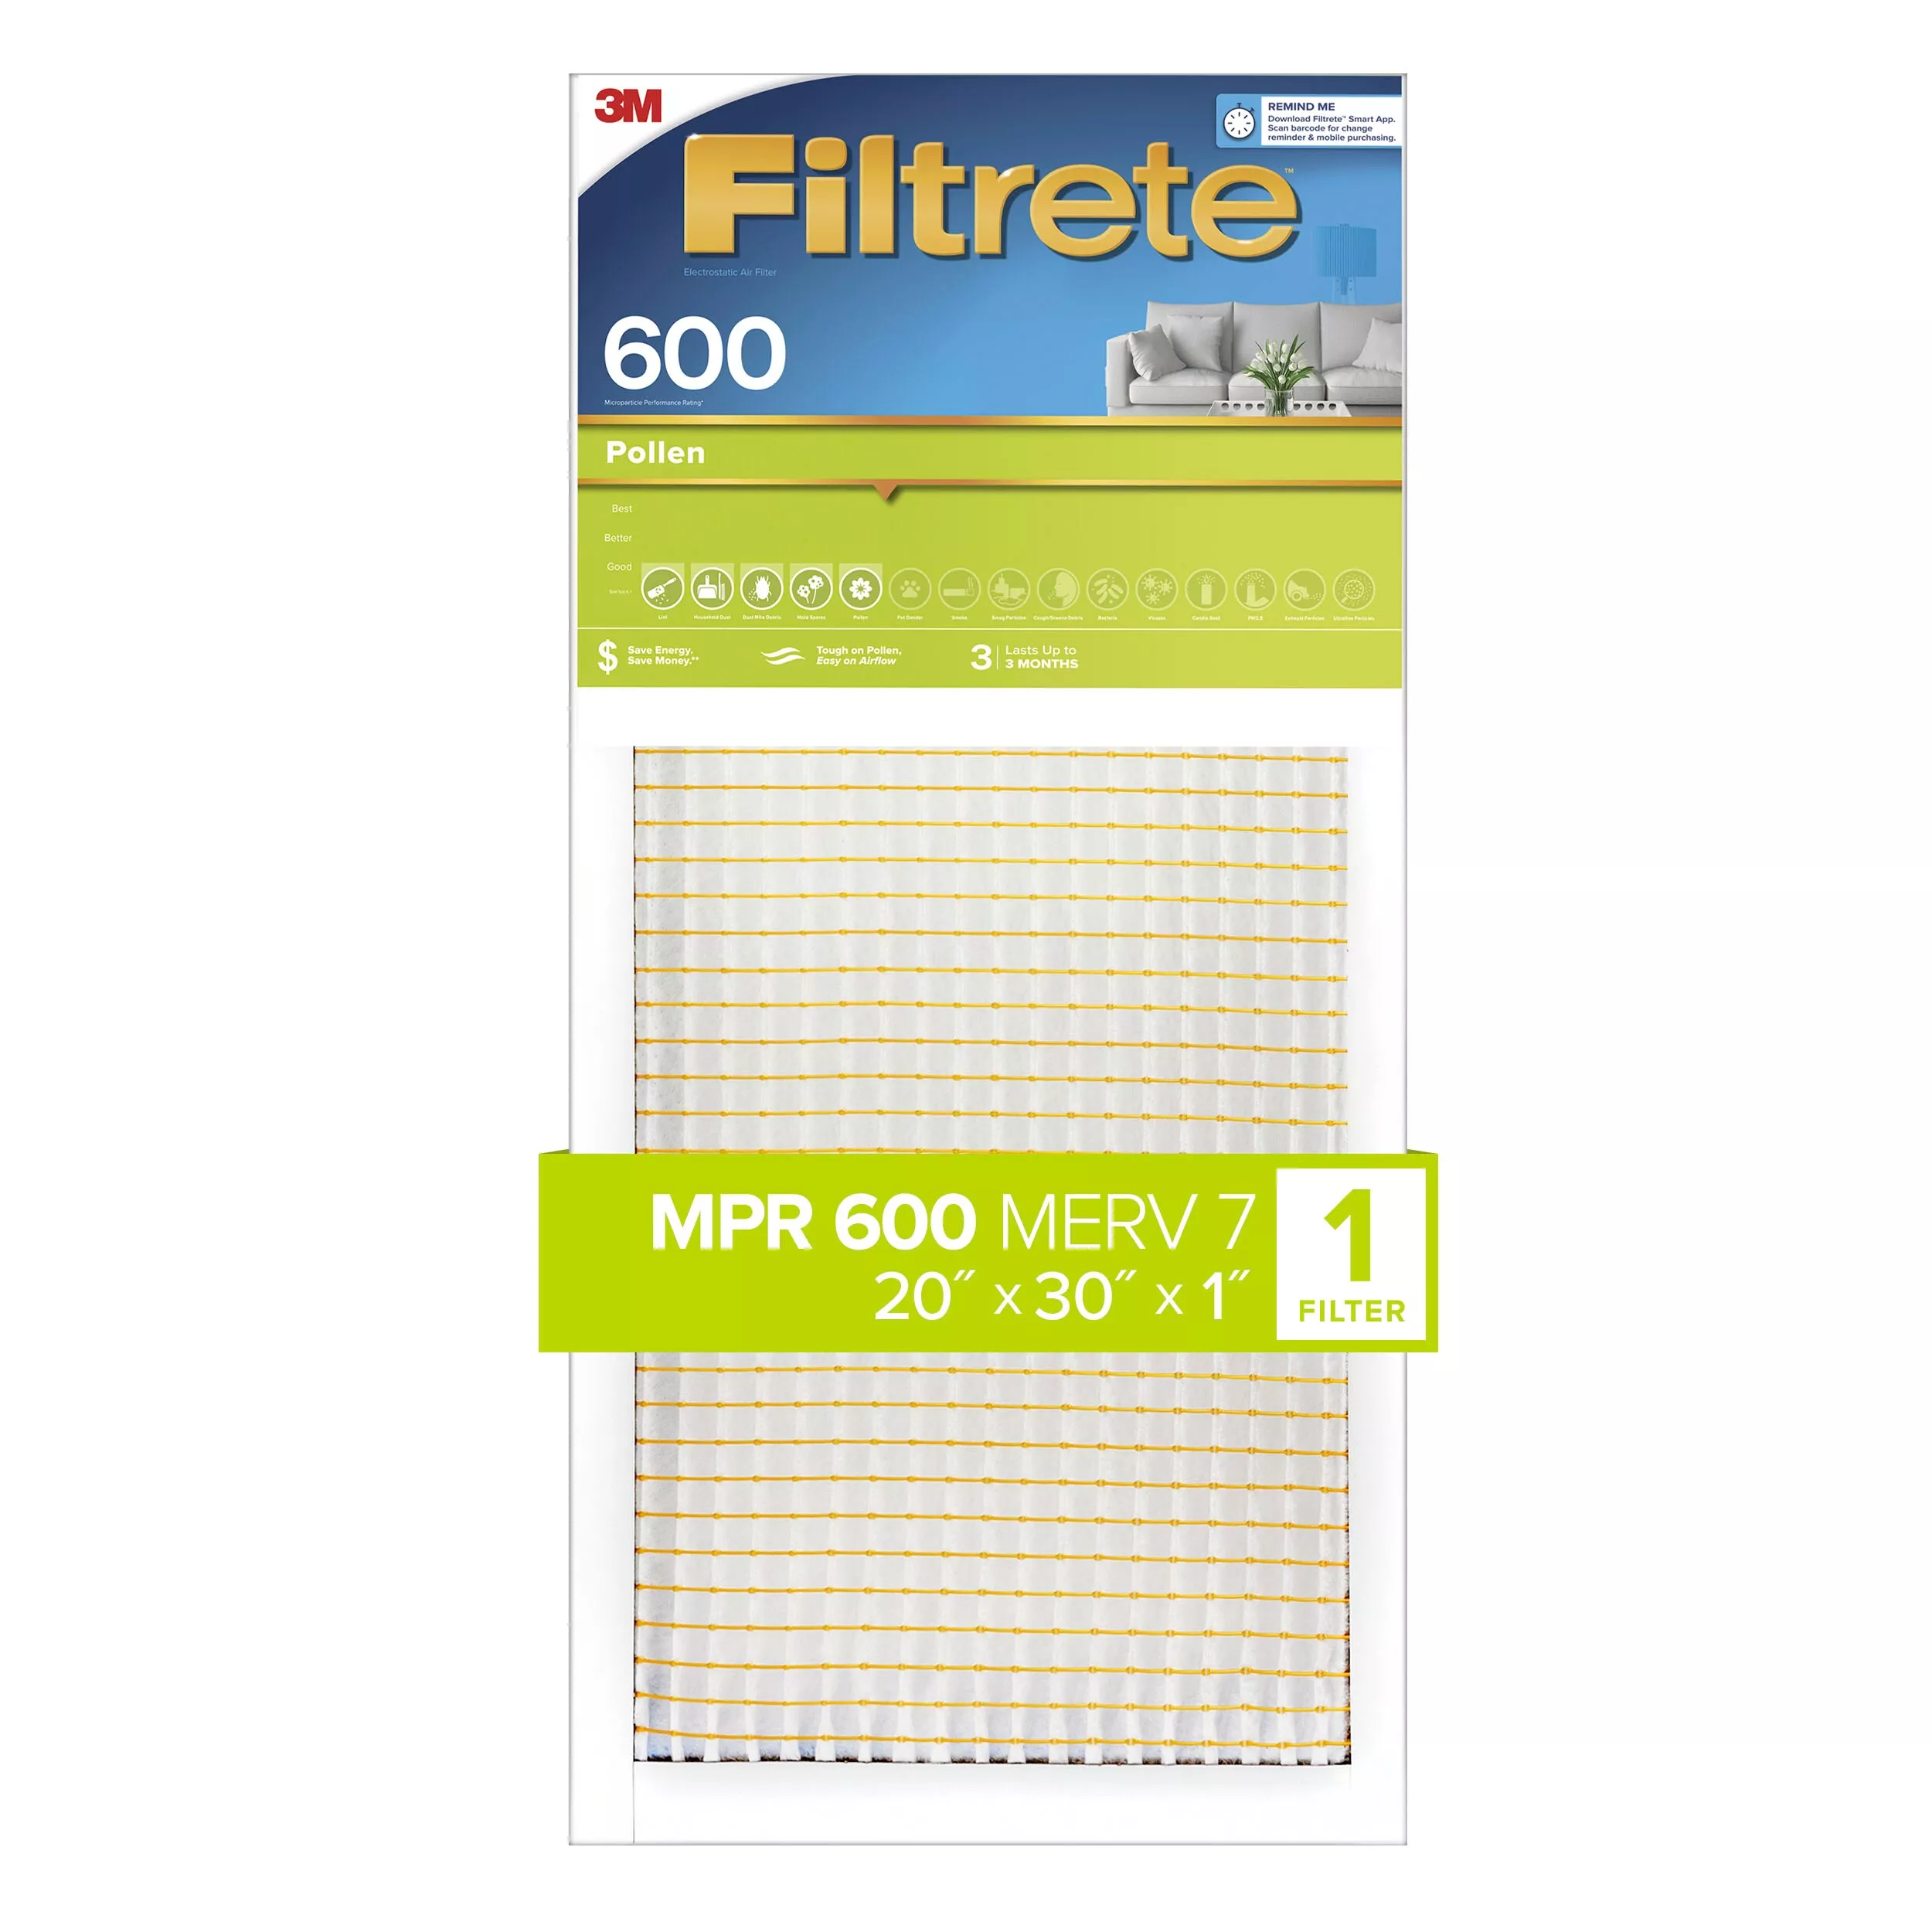 Filtrete™ Pollen Air Filter, 600 MPR, 9882-4, 20 in x 30 in x 1 in (50,8
cm x 76,2 cm x 2,5 cm)